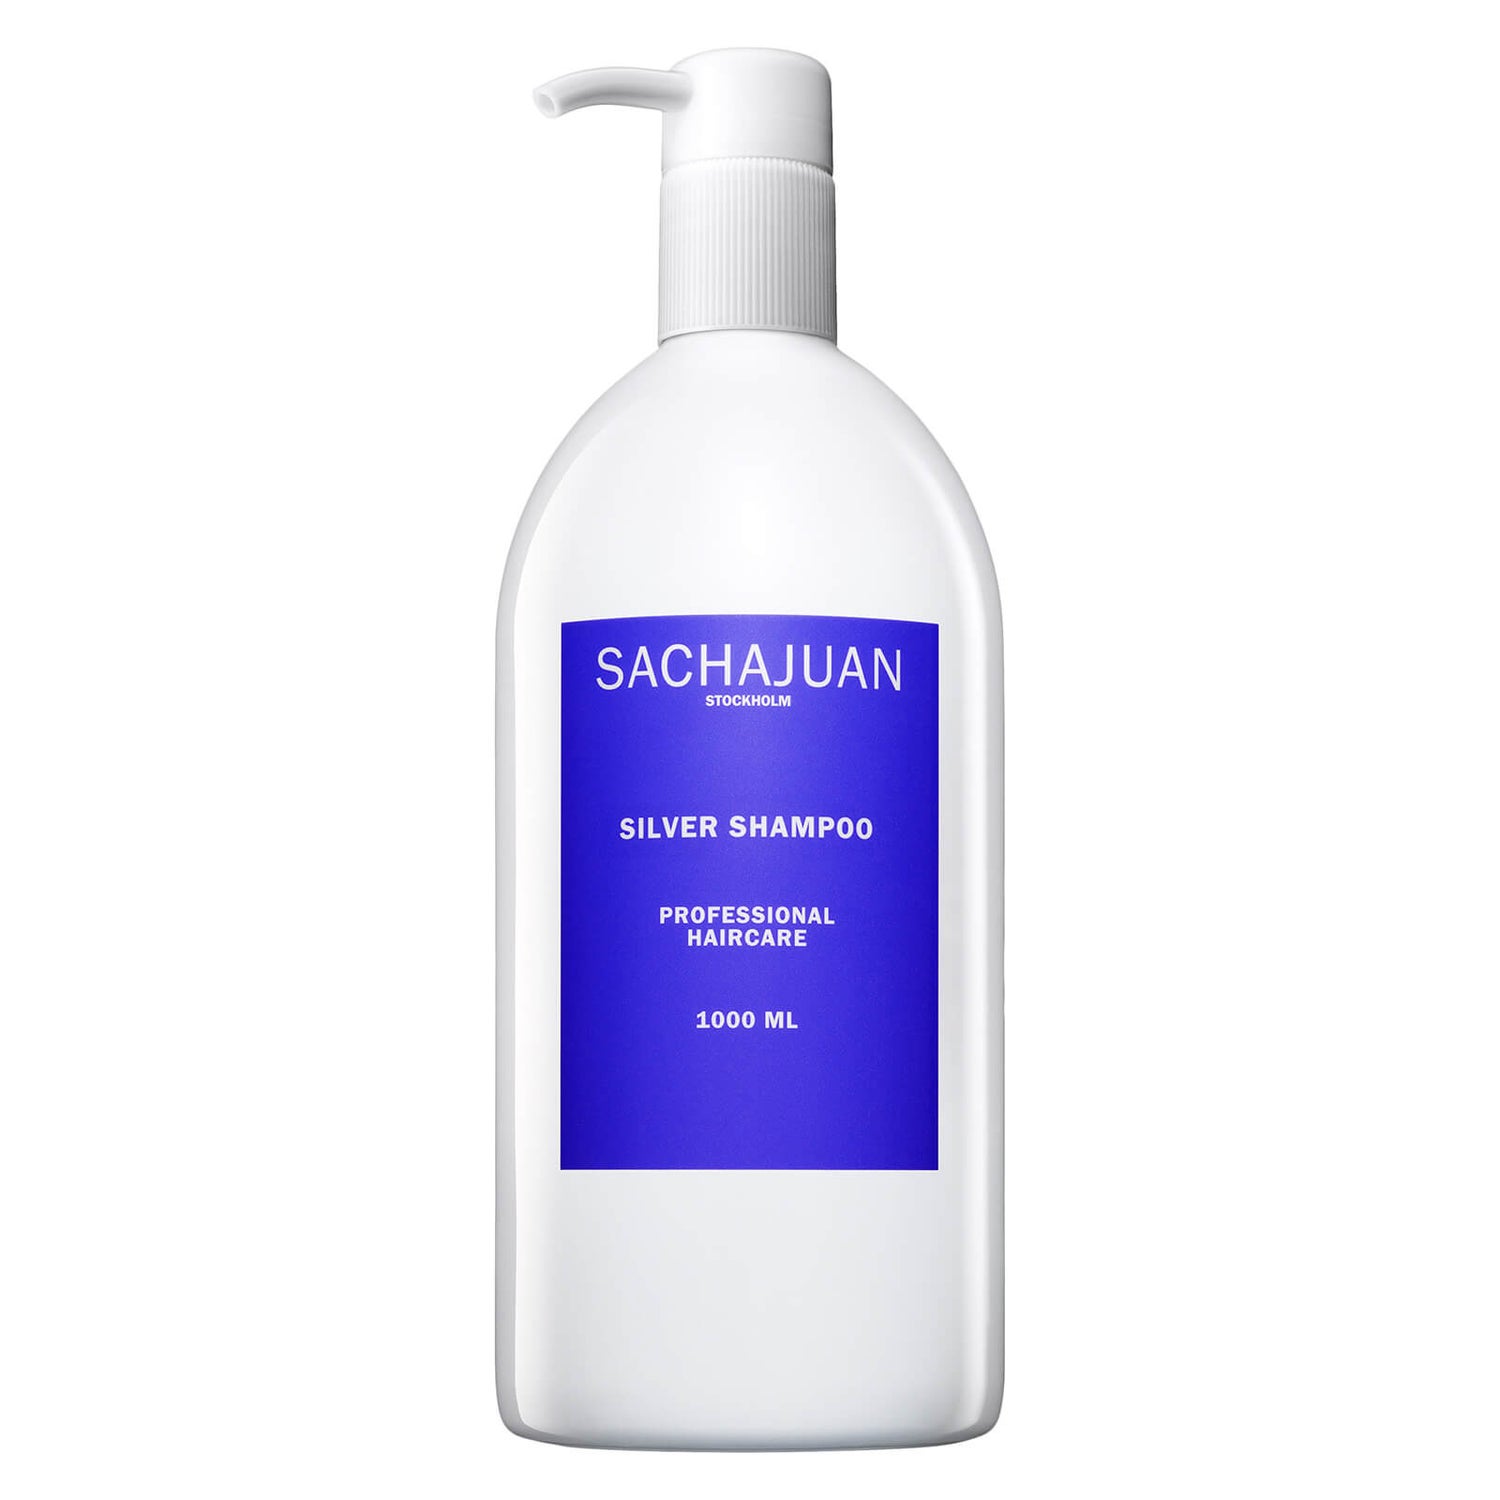 Sachajuan Silver Shampoo 1000ml